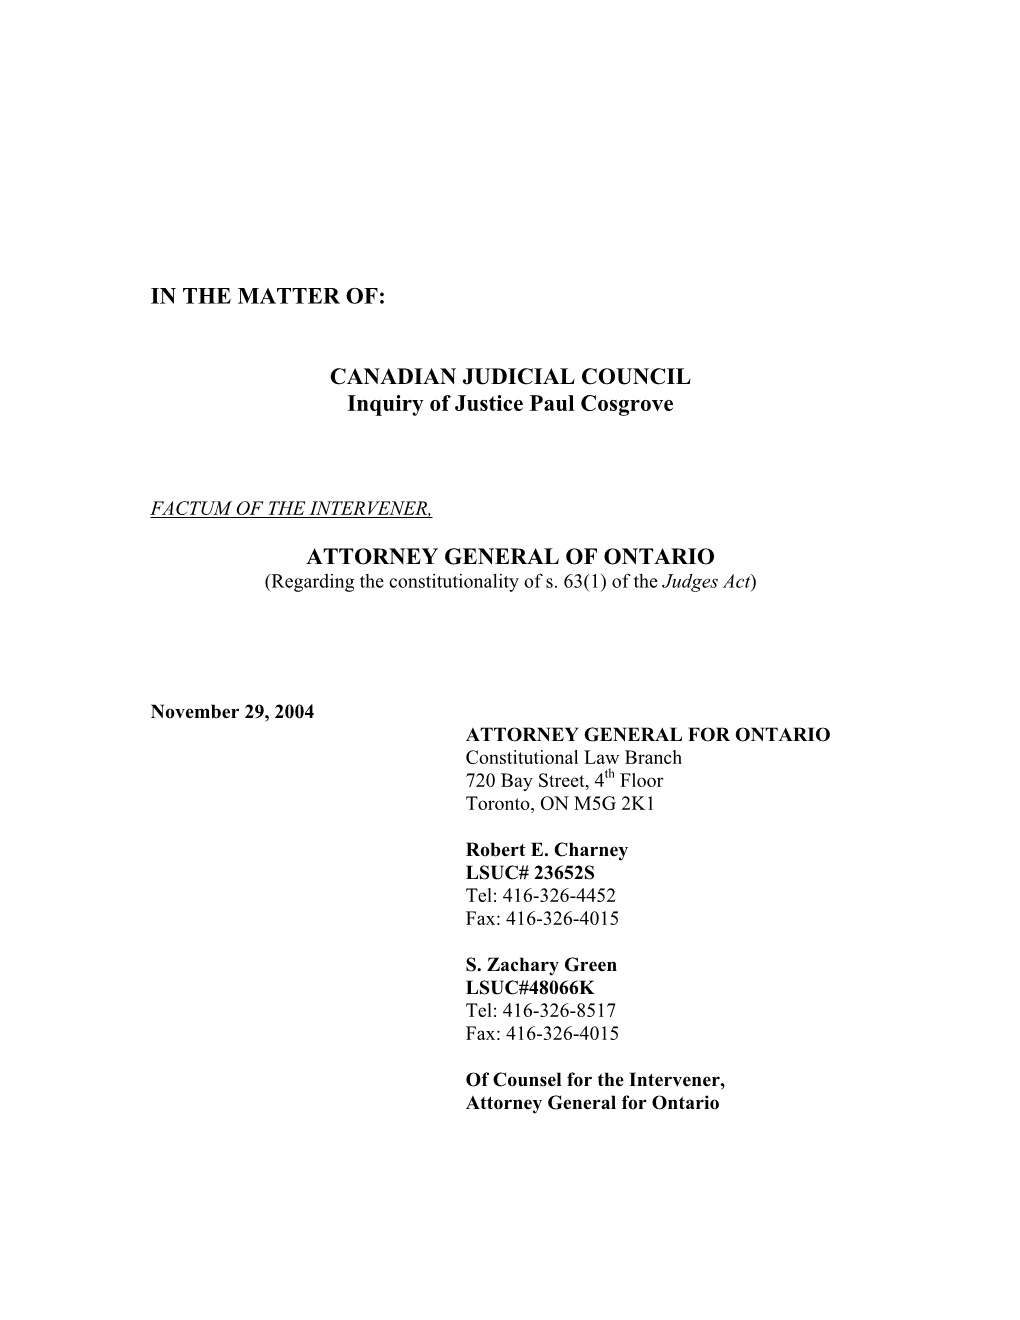 Factum of the Attorney General of Ontario